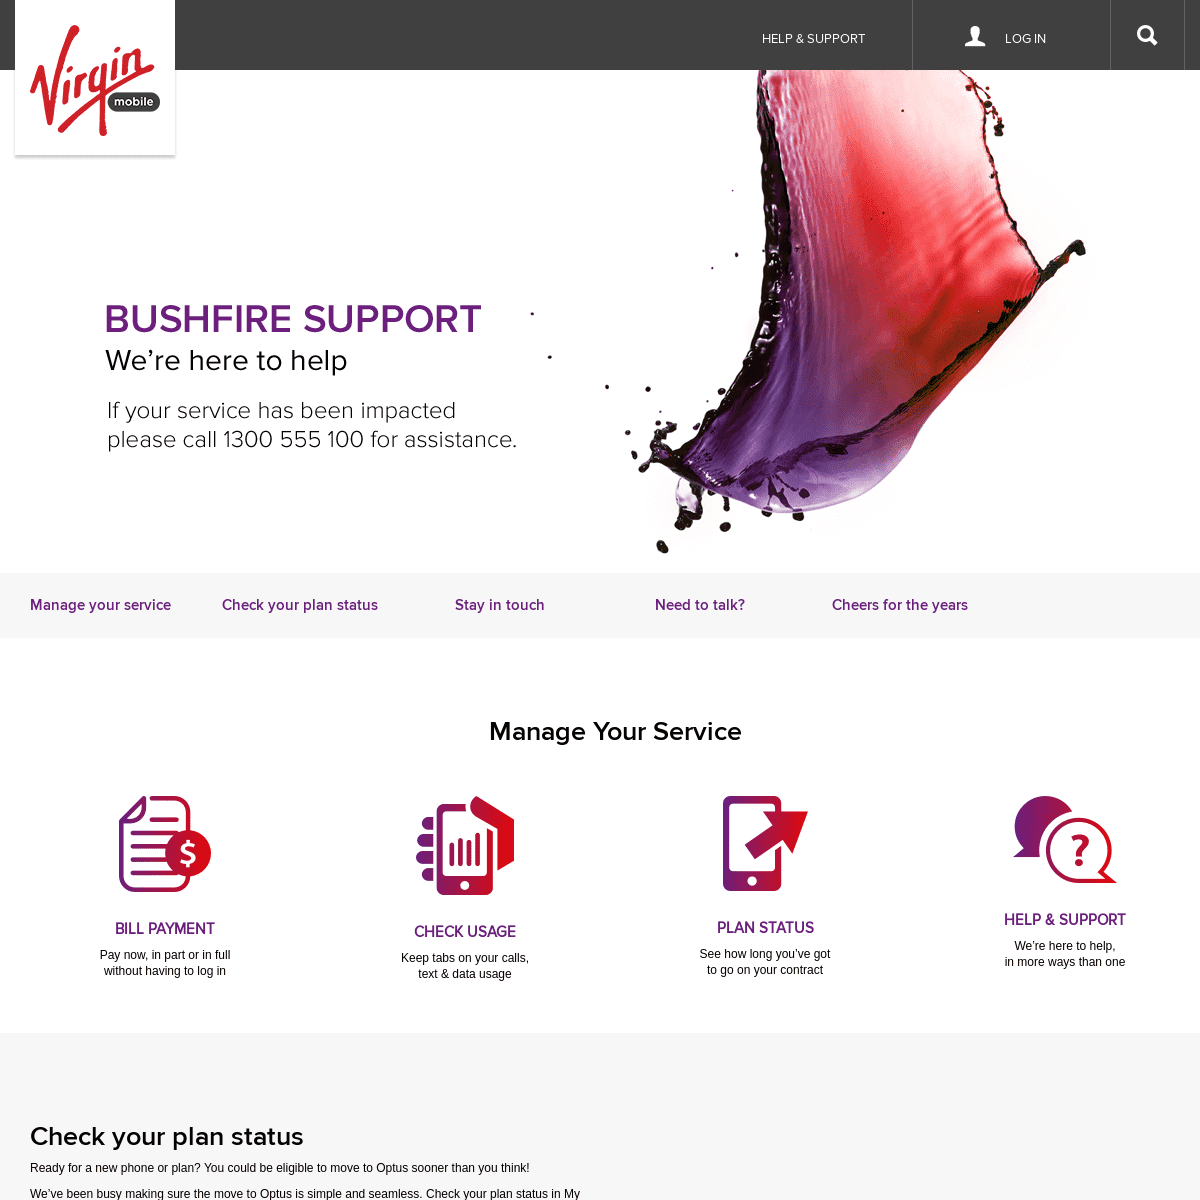 A complete backup of virginmobile.com.au